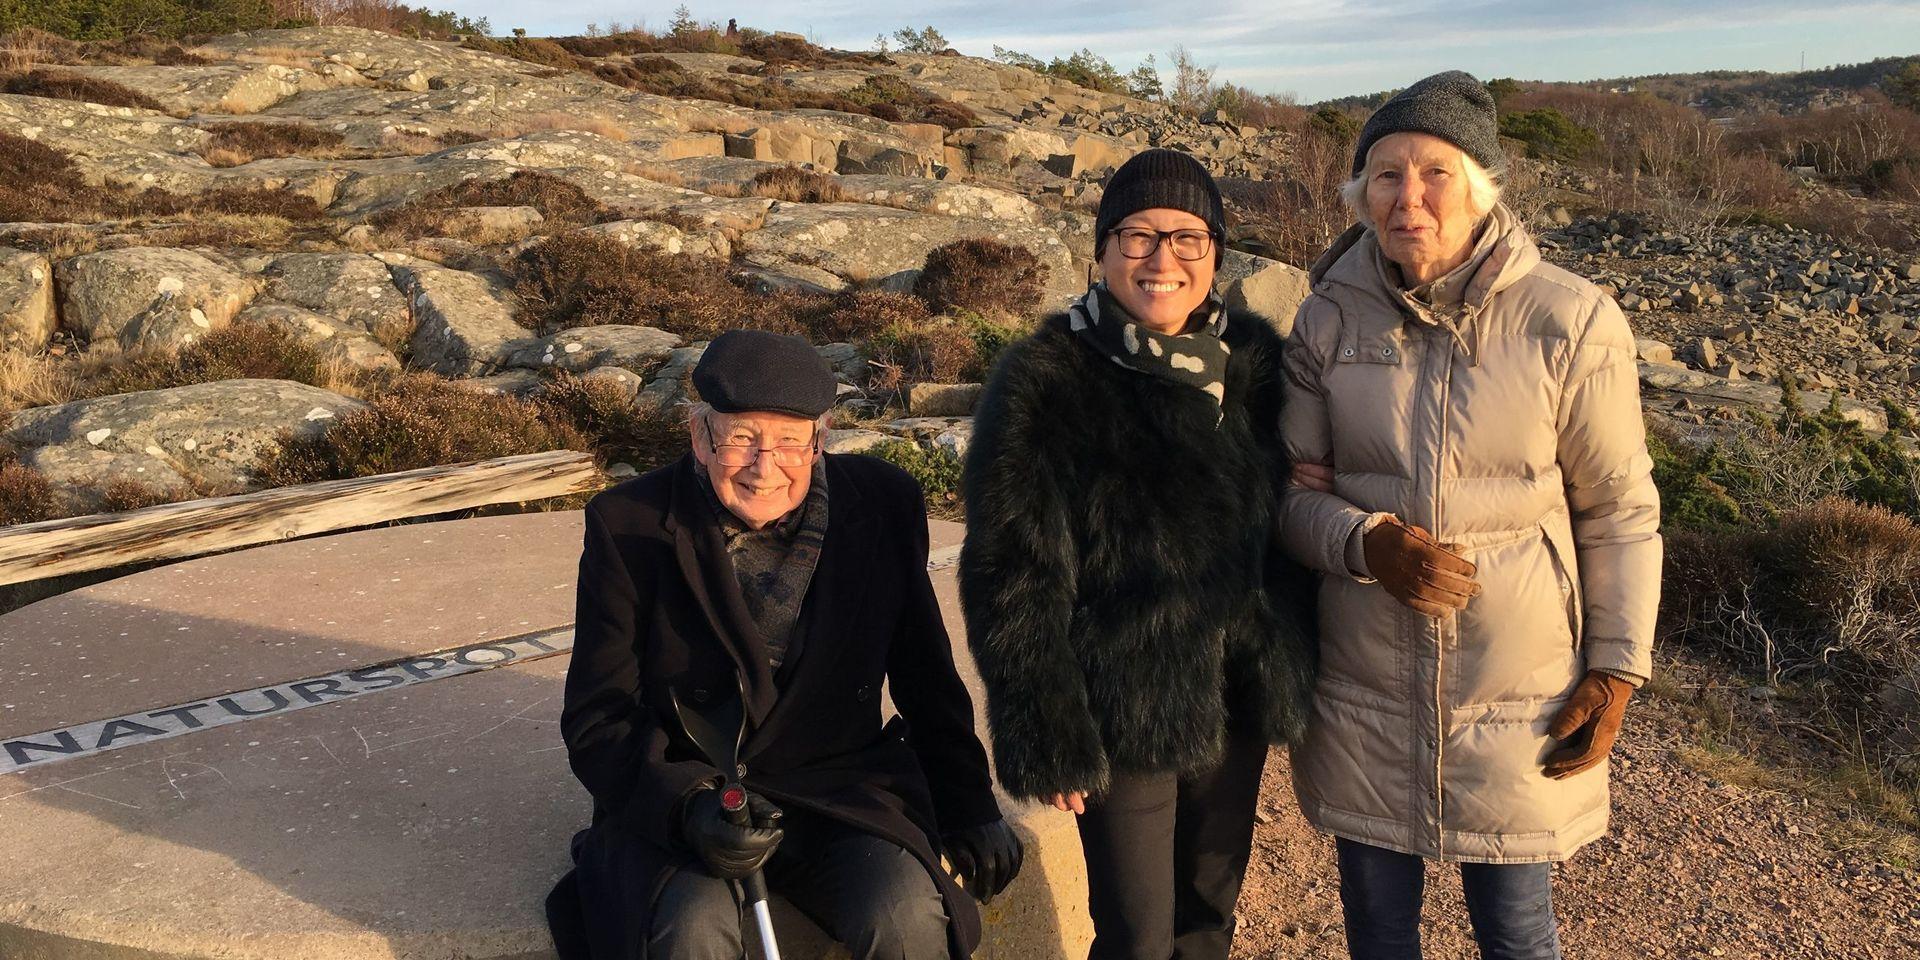 Birgit Falk var dement men pigg i kroppen. Här från en utflykt runt Smithska udden tillsammans med maken Jan och dottern Maria på nyårsafton 2019.